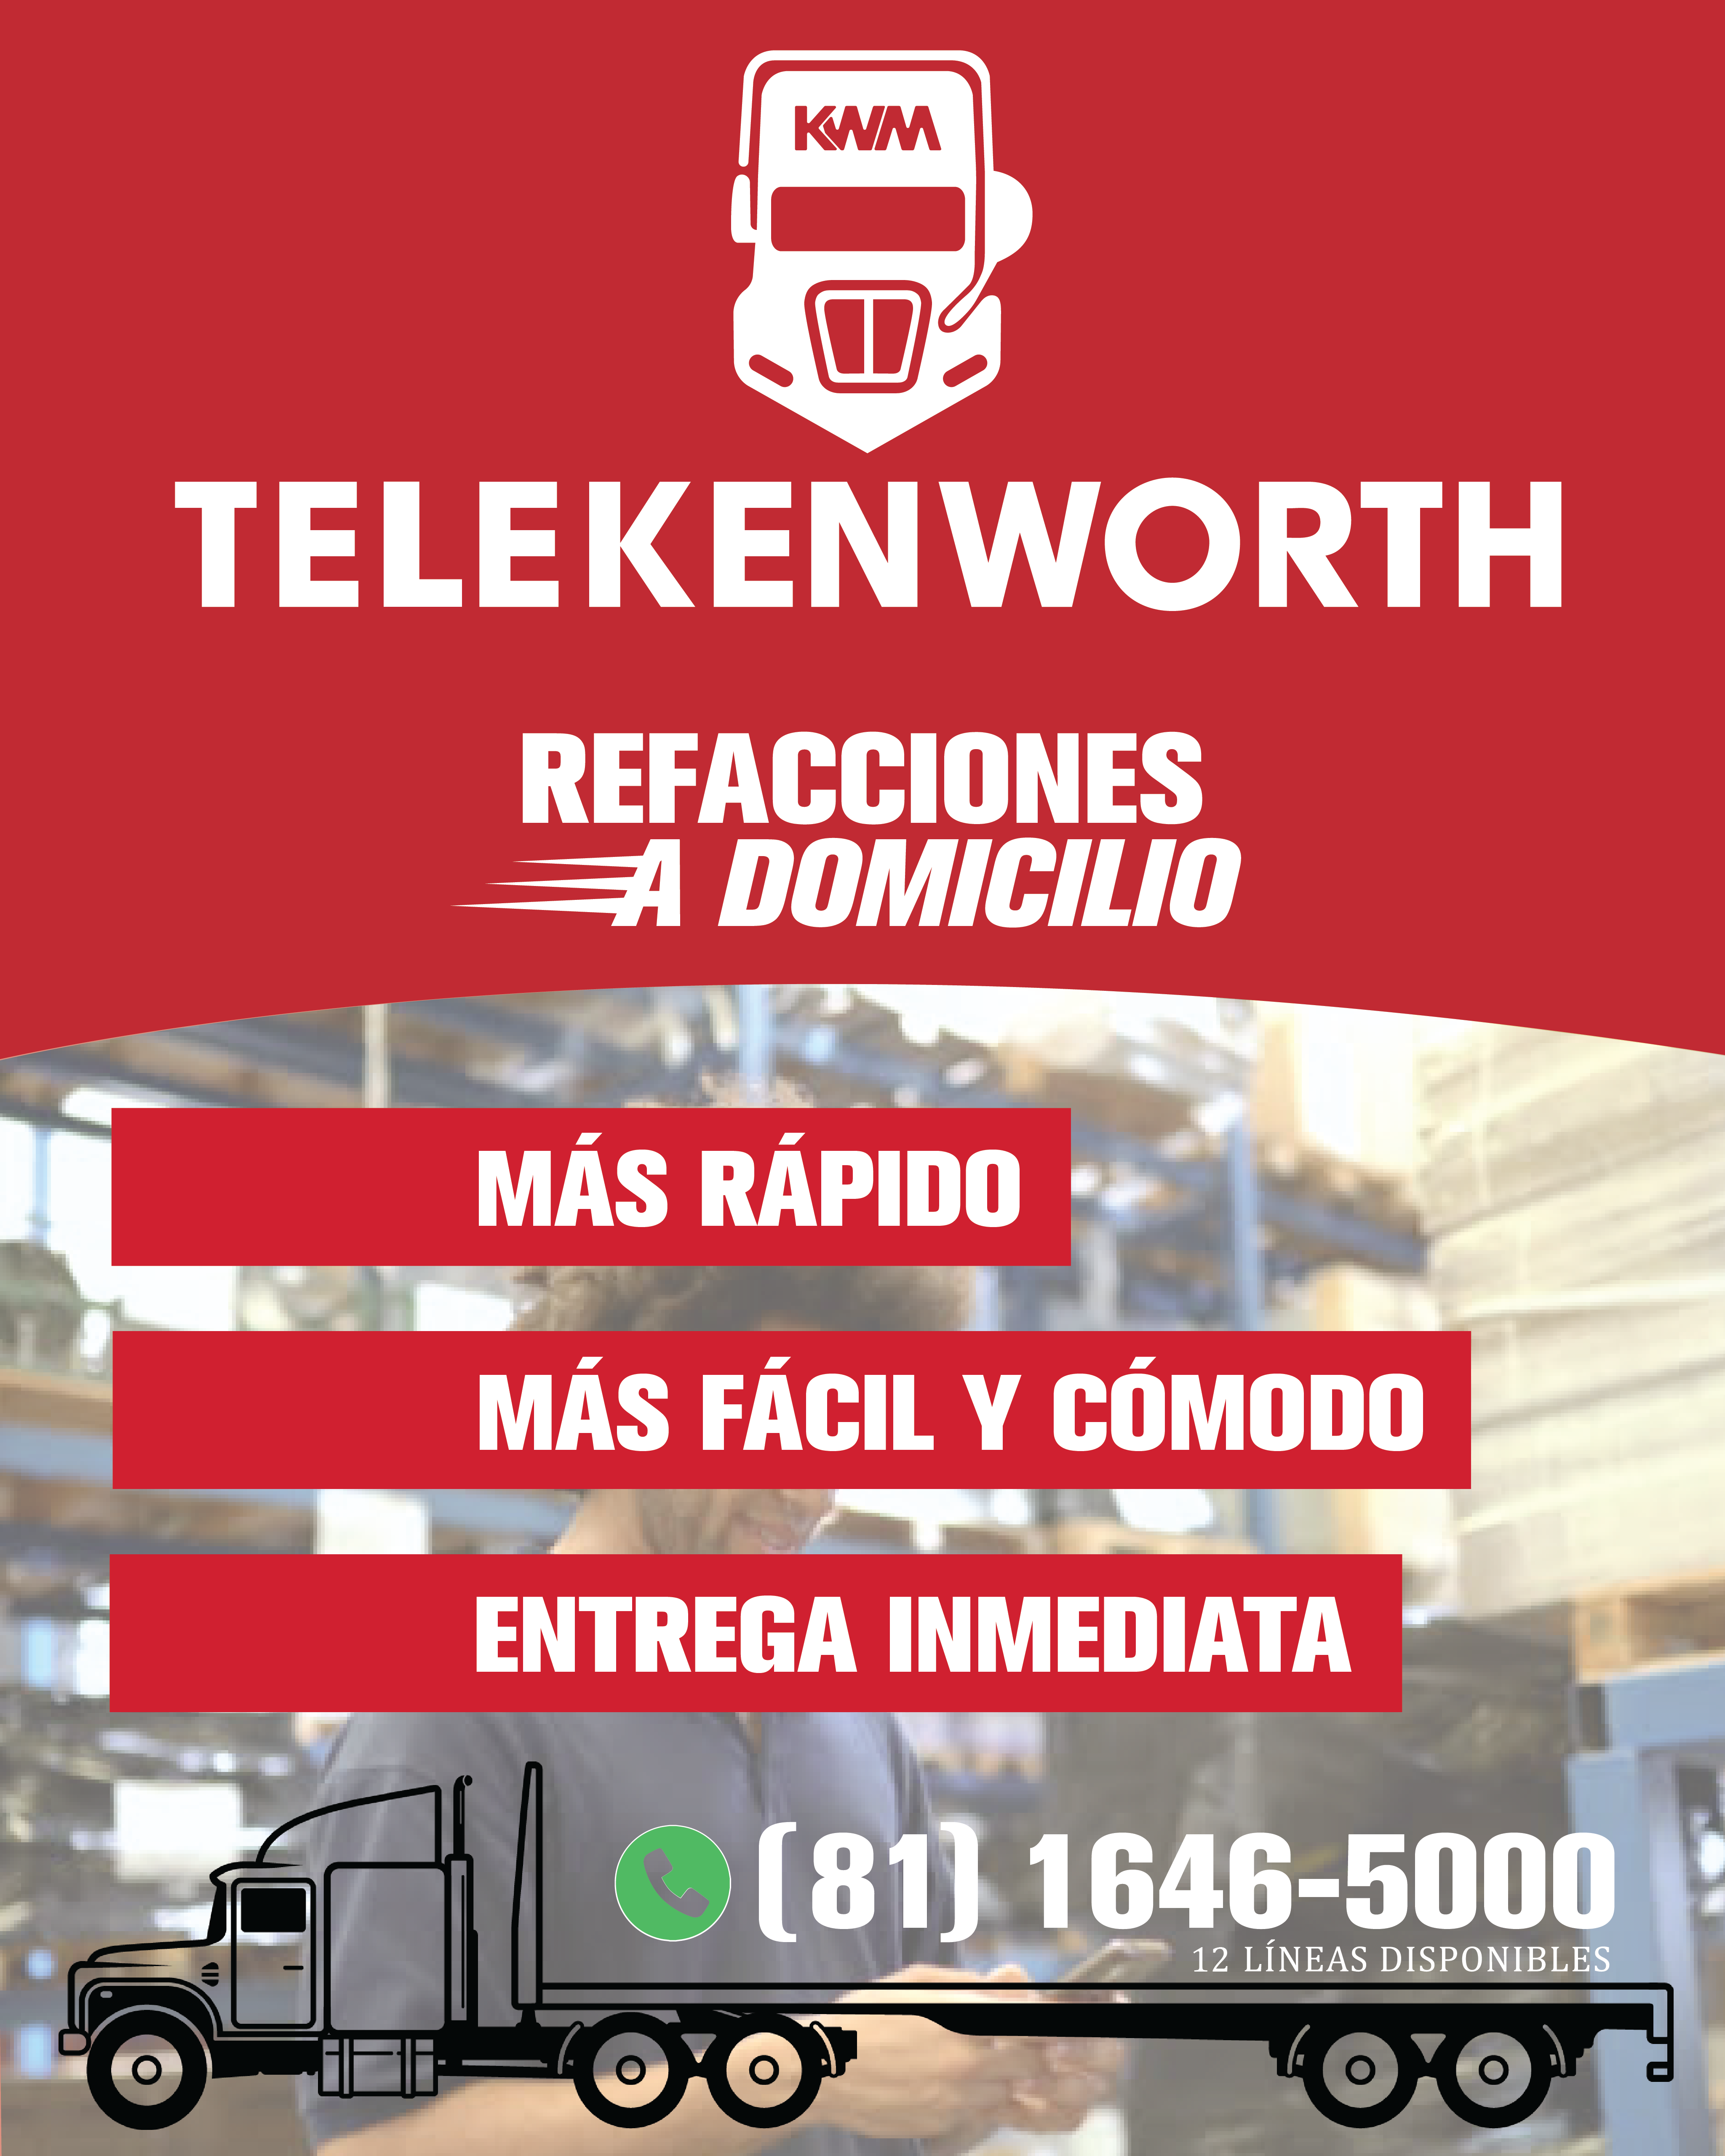 TELEKENWORTH es nuestro CALL CENTER de surtimiento de refacciones. Los transportistas pueden llamar a la línea telefónica TELEKENWORTH y uno de nuestros asesores los ayudará a encontrar cualquier pieza que necesite.